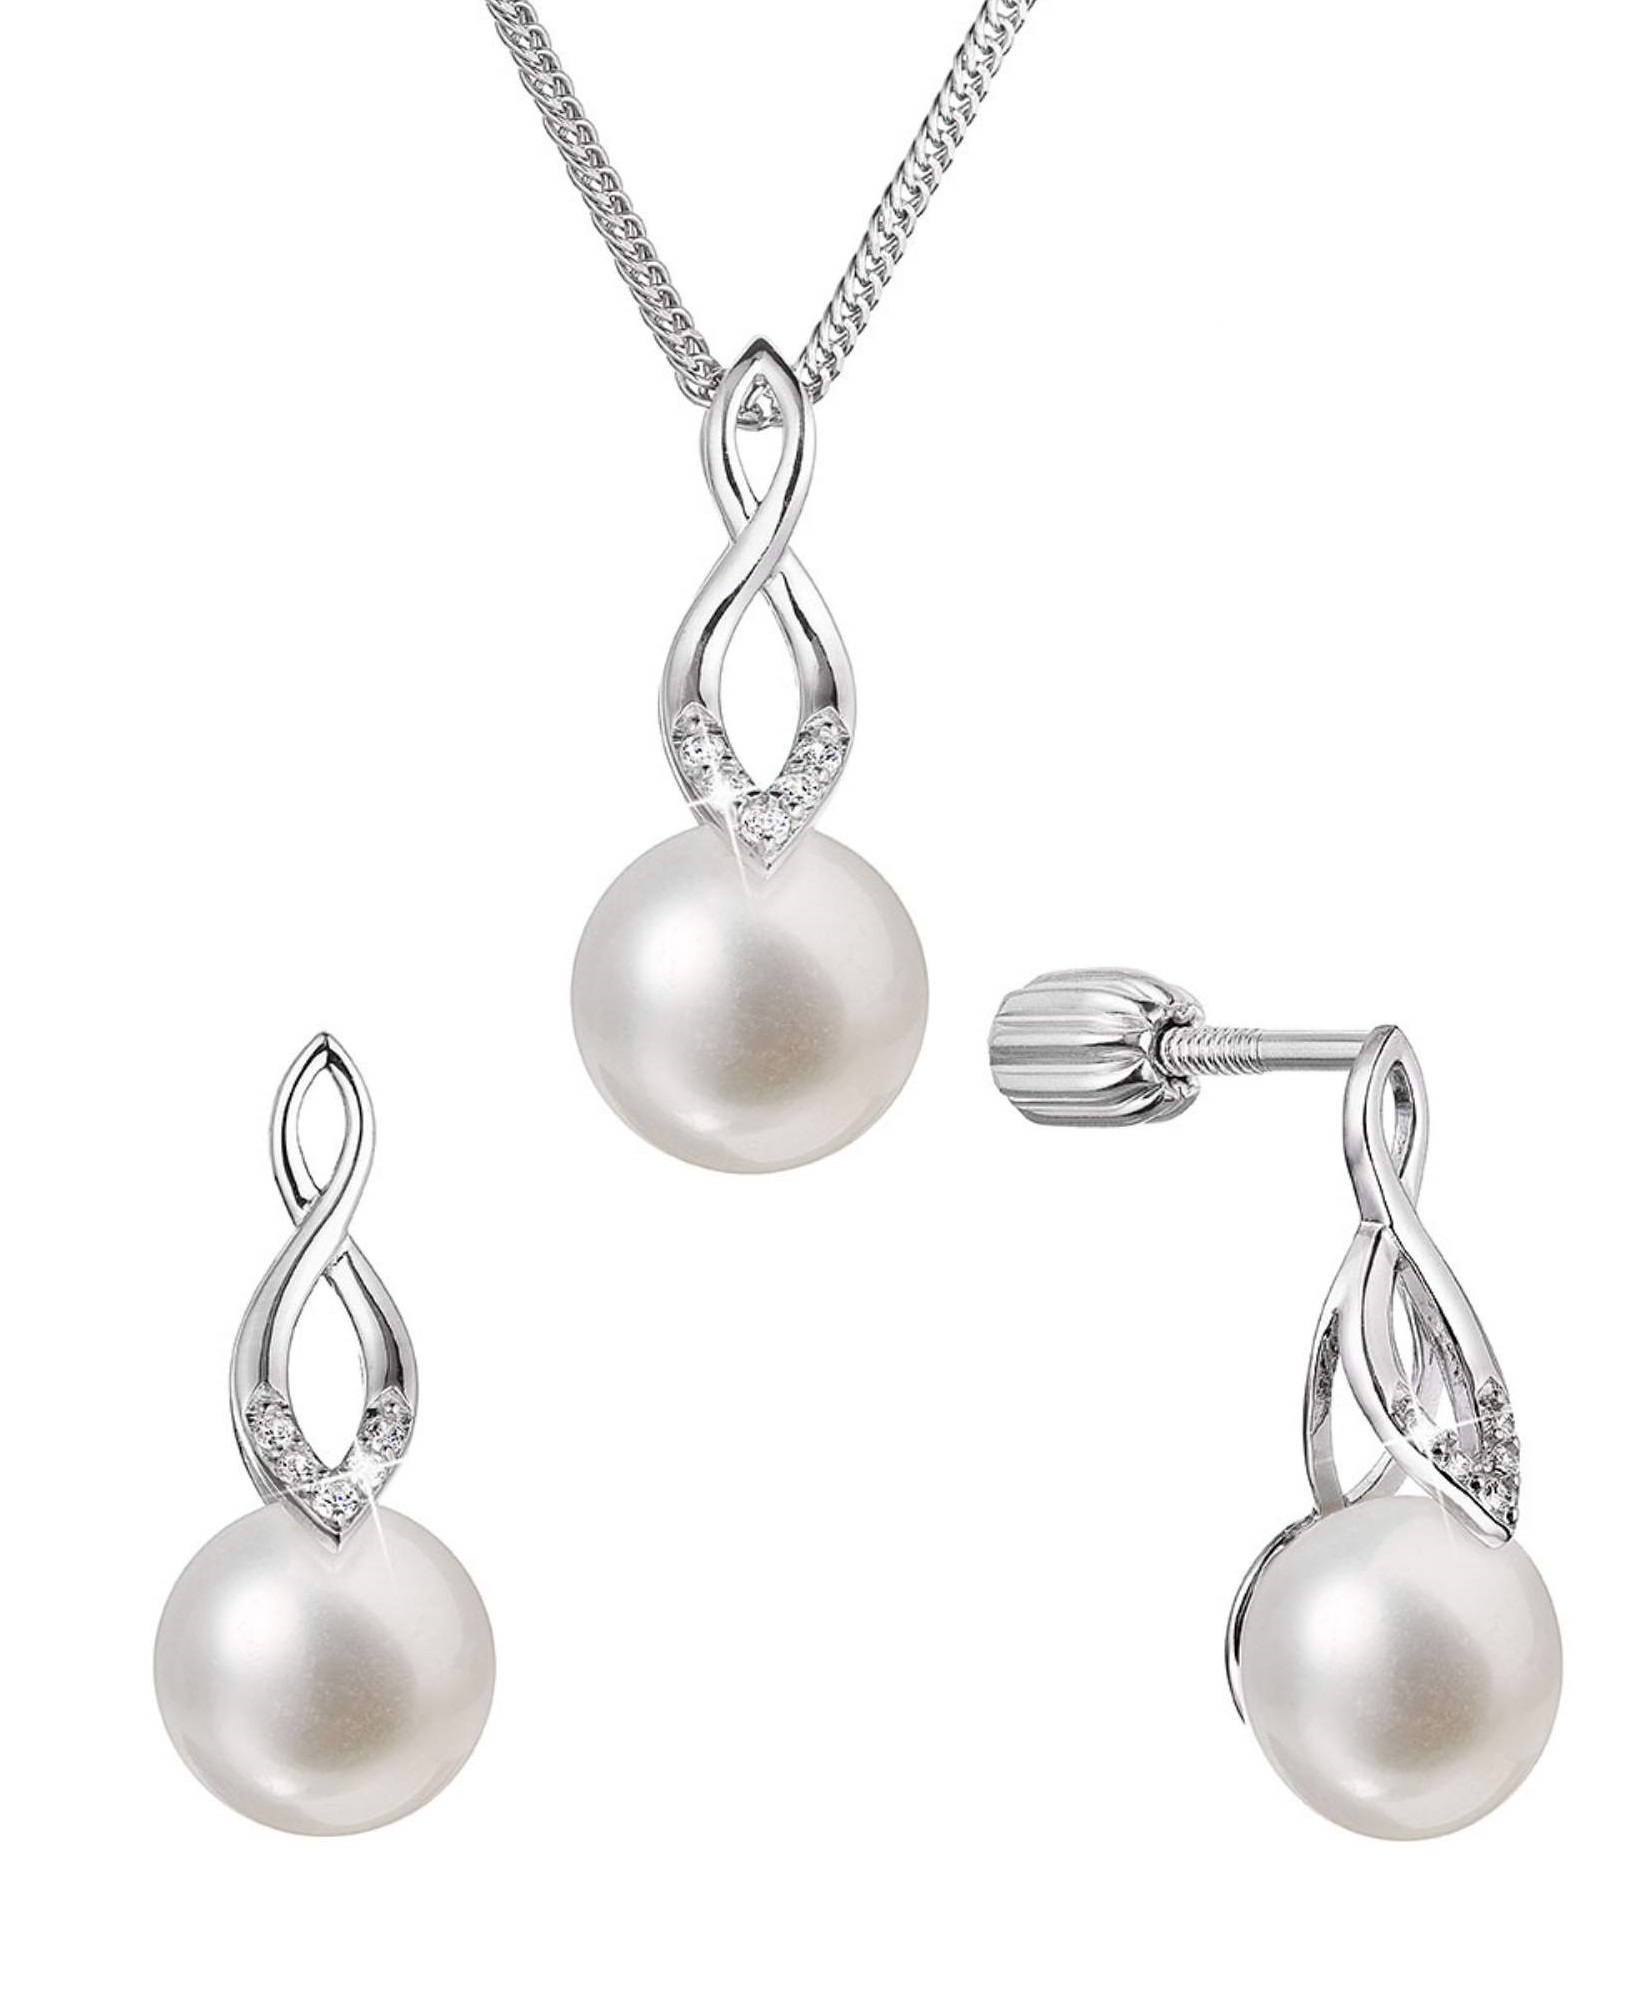 Evolution Group Súprava strieborných šperkov so zirkónmi a pravými perlami 29052.1B (náušnice, retiazka, prívesok)